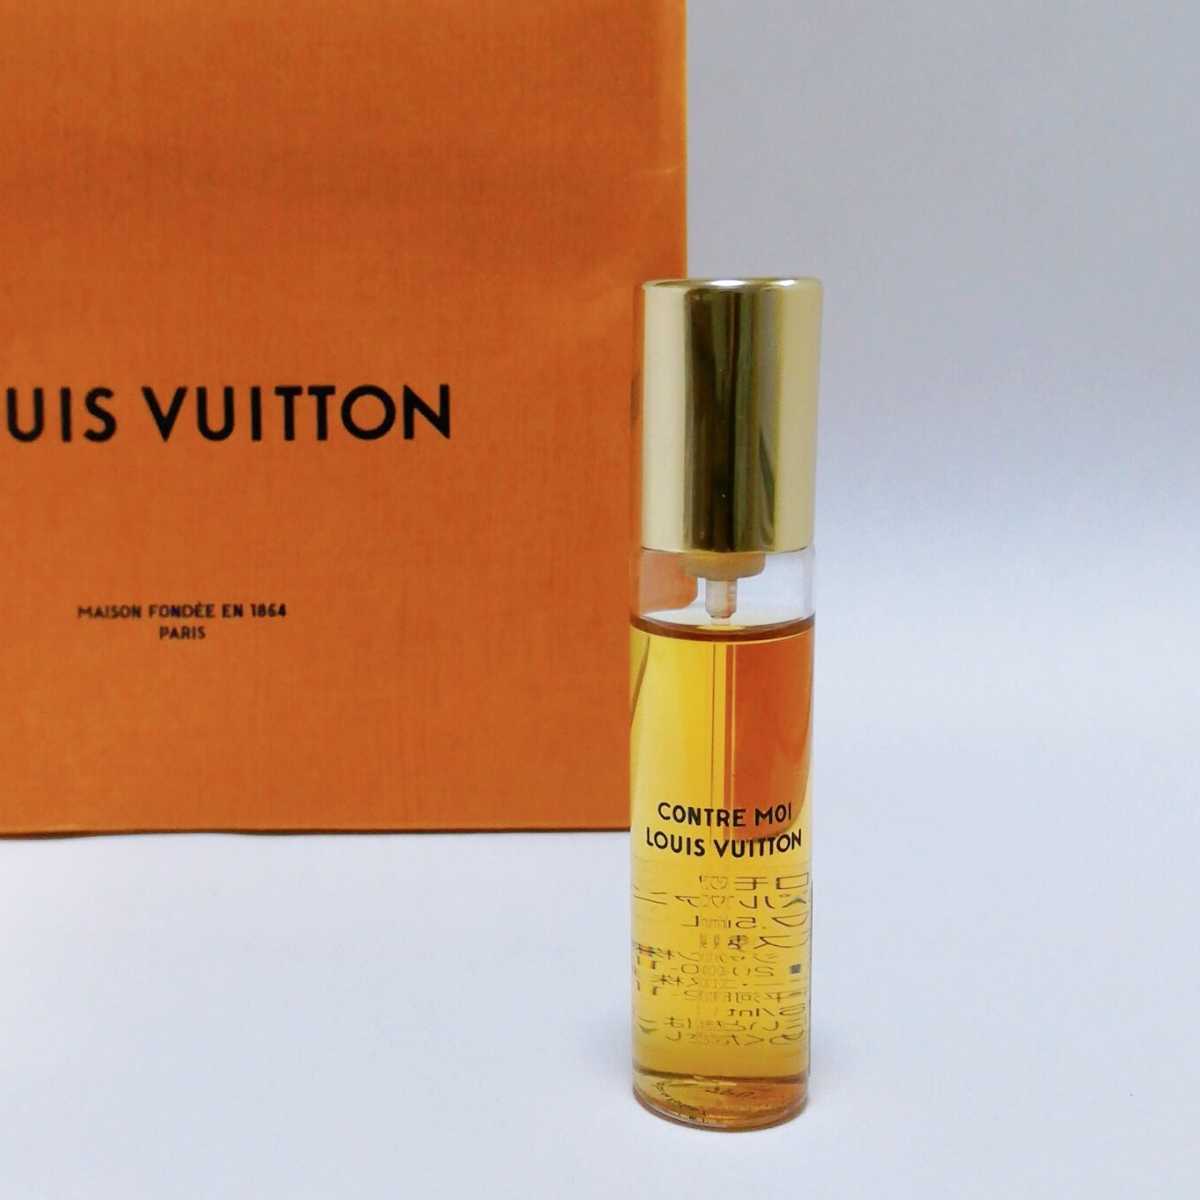 い出のひと時に、とびきりのおしゃれを！ ルイヴィトン香水 レフィル - その他 - www.fonsti.org